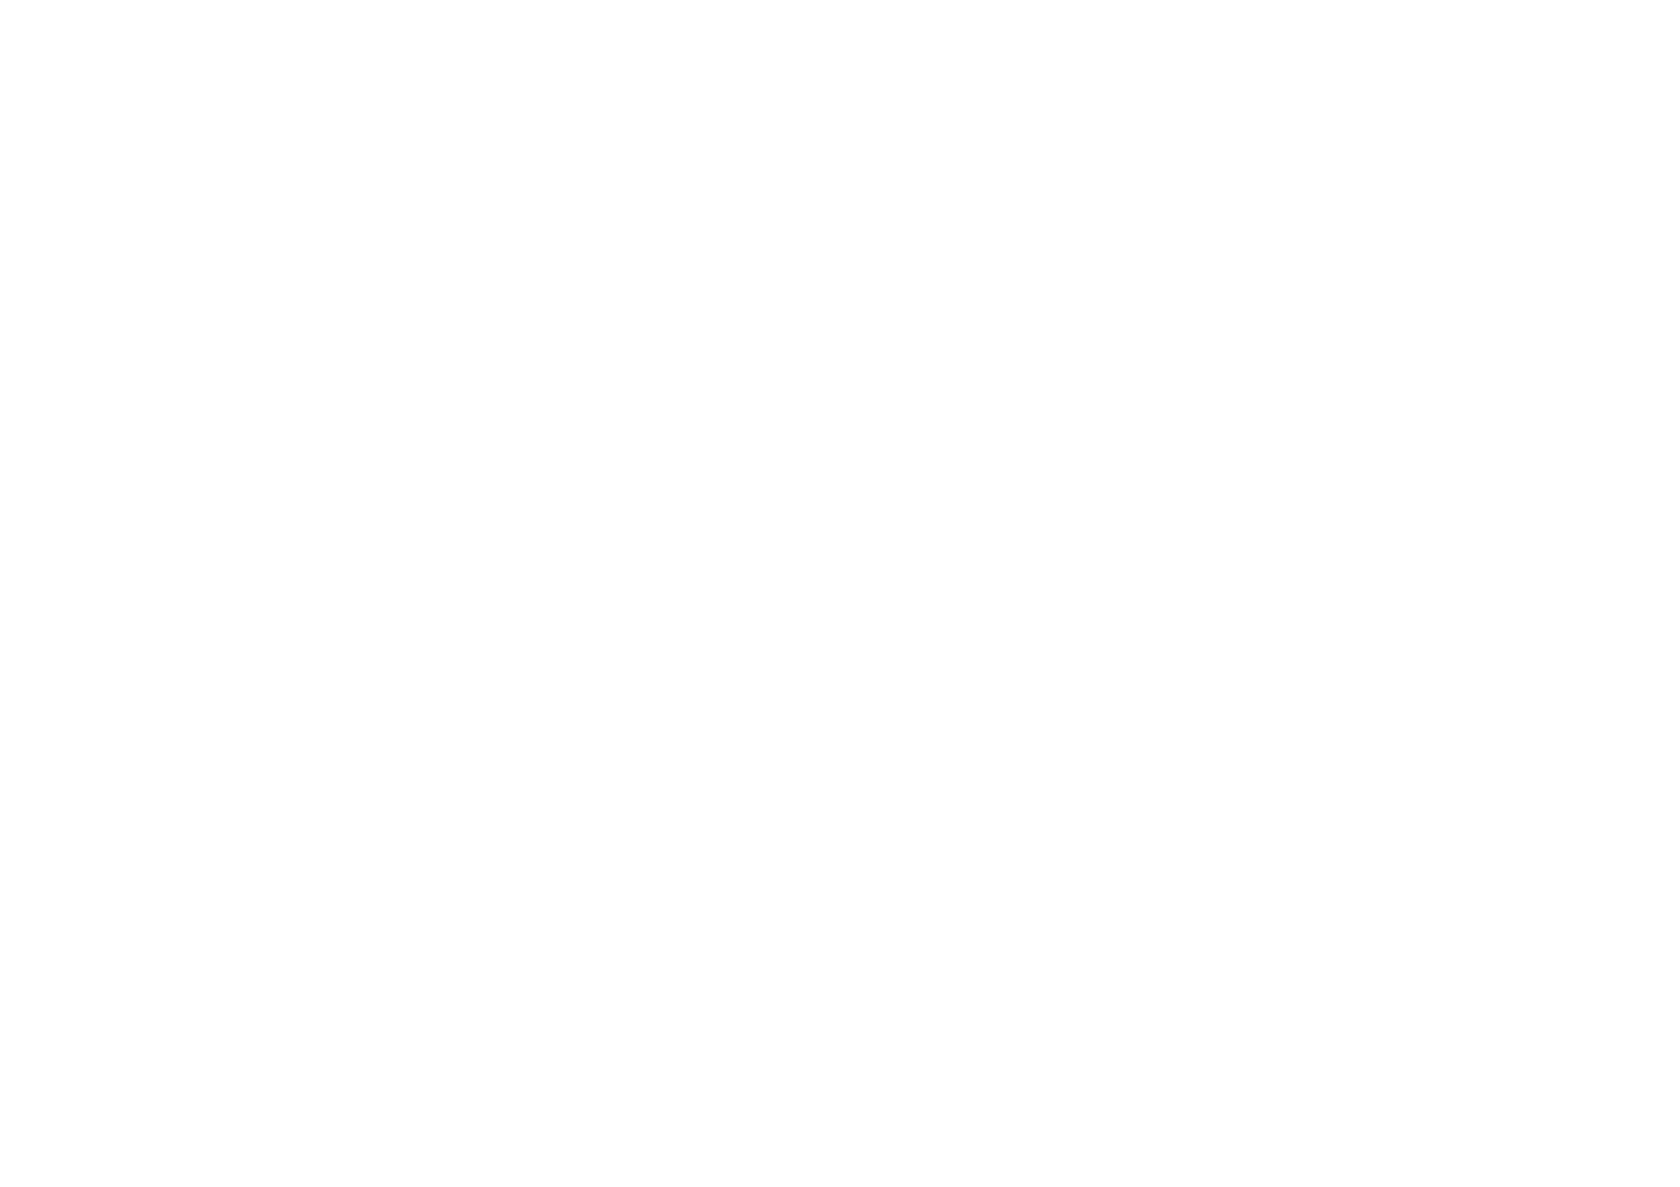 Логотип, корона и для бренда Carlsberg на новой этикетке